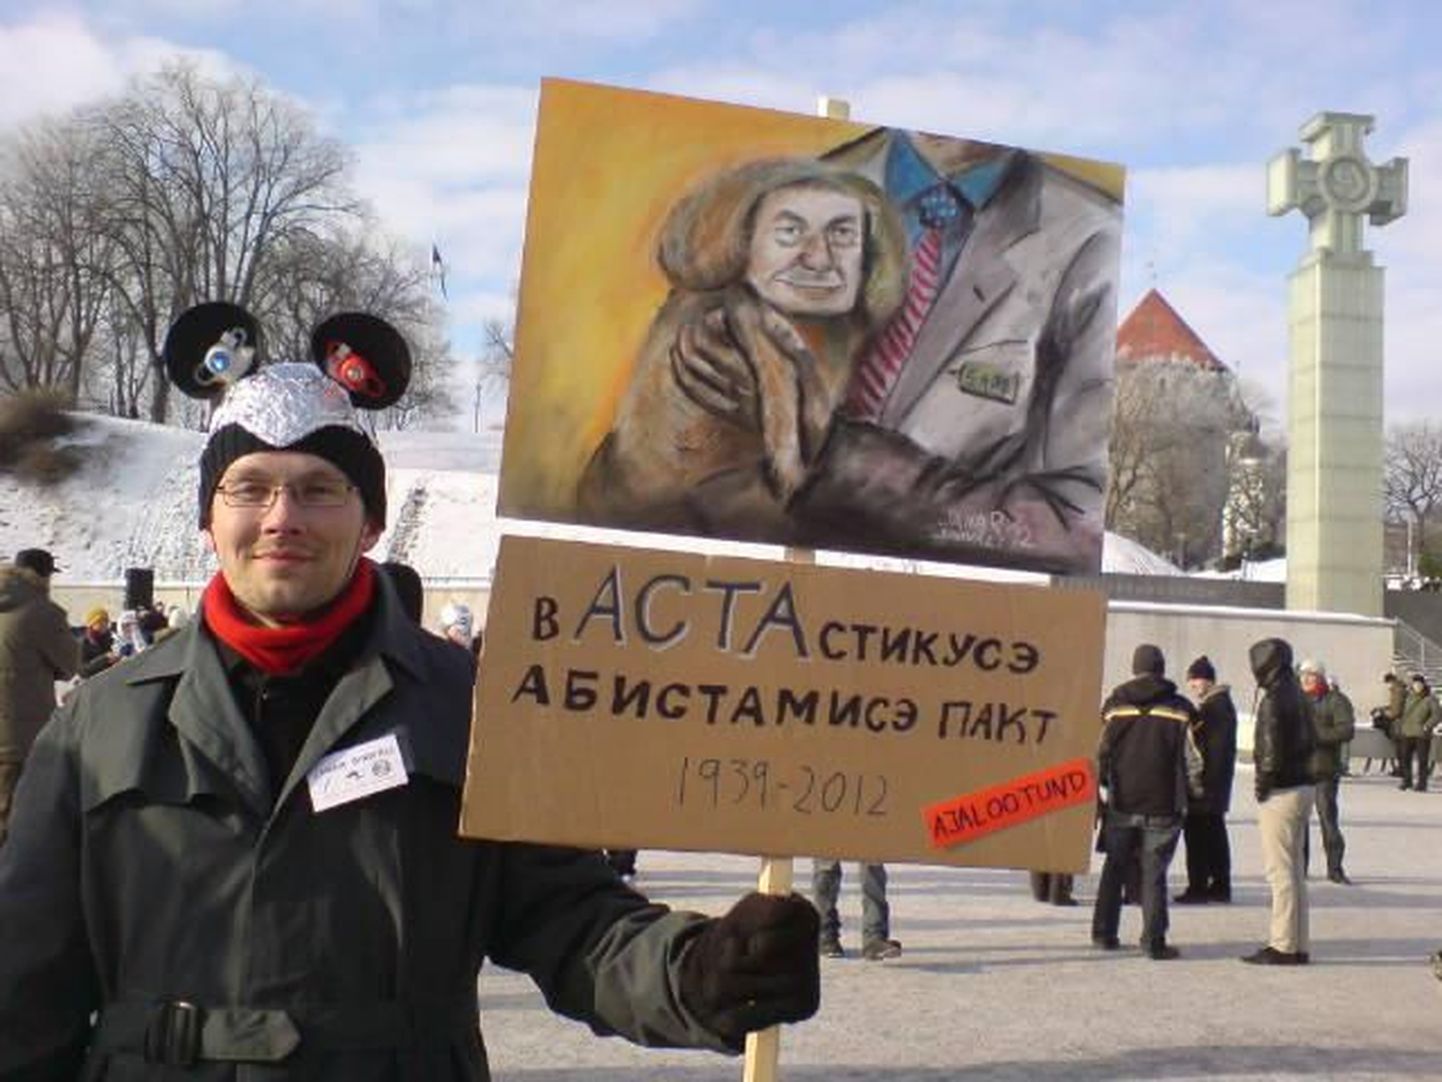 ACTA vastane meeleavaldus täna Tallinnas Vabaduse väljakul.